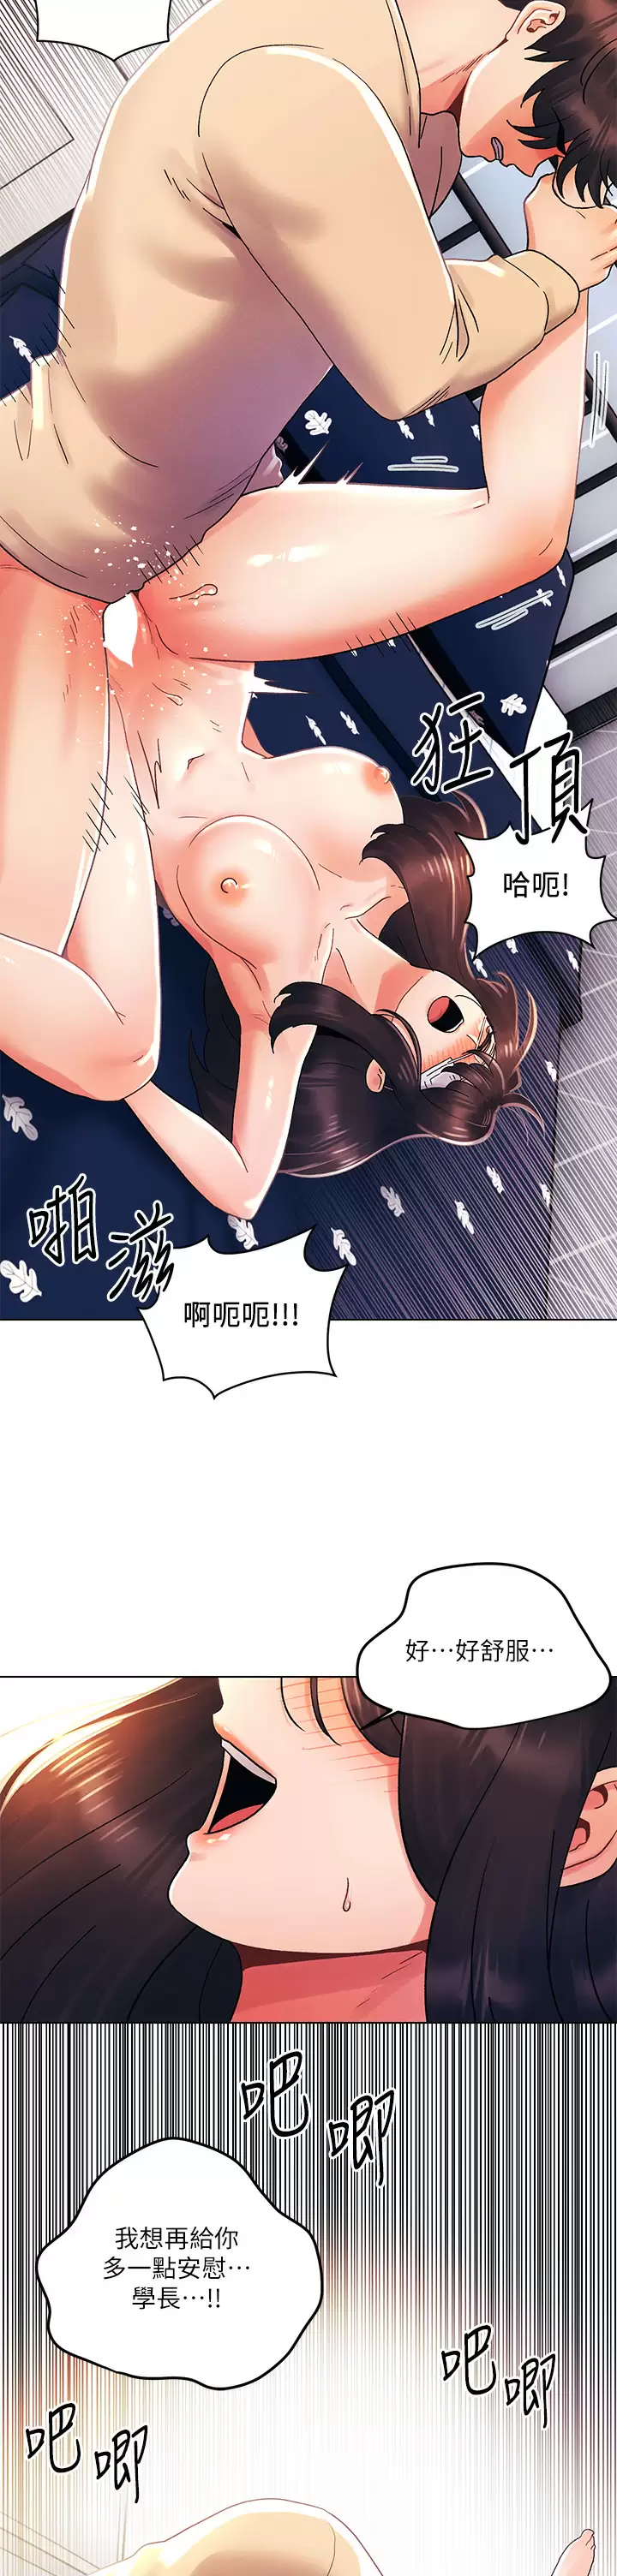 韩国污漫画 今晚是第一次 第32话兽性大发的亦明 19